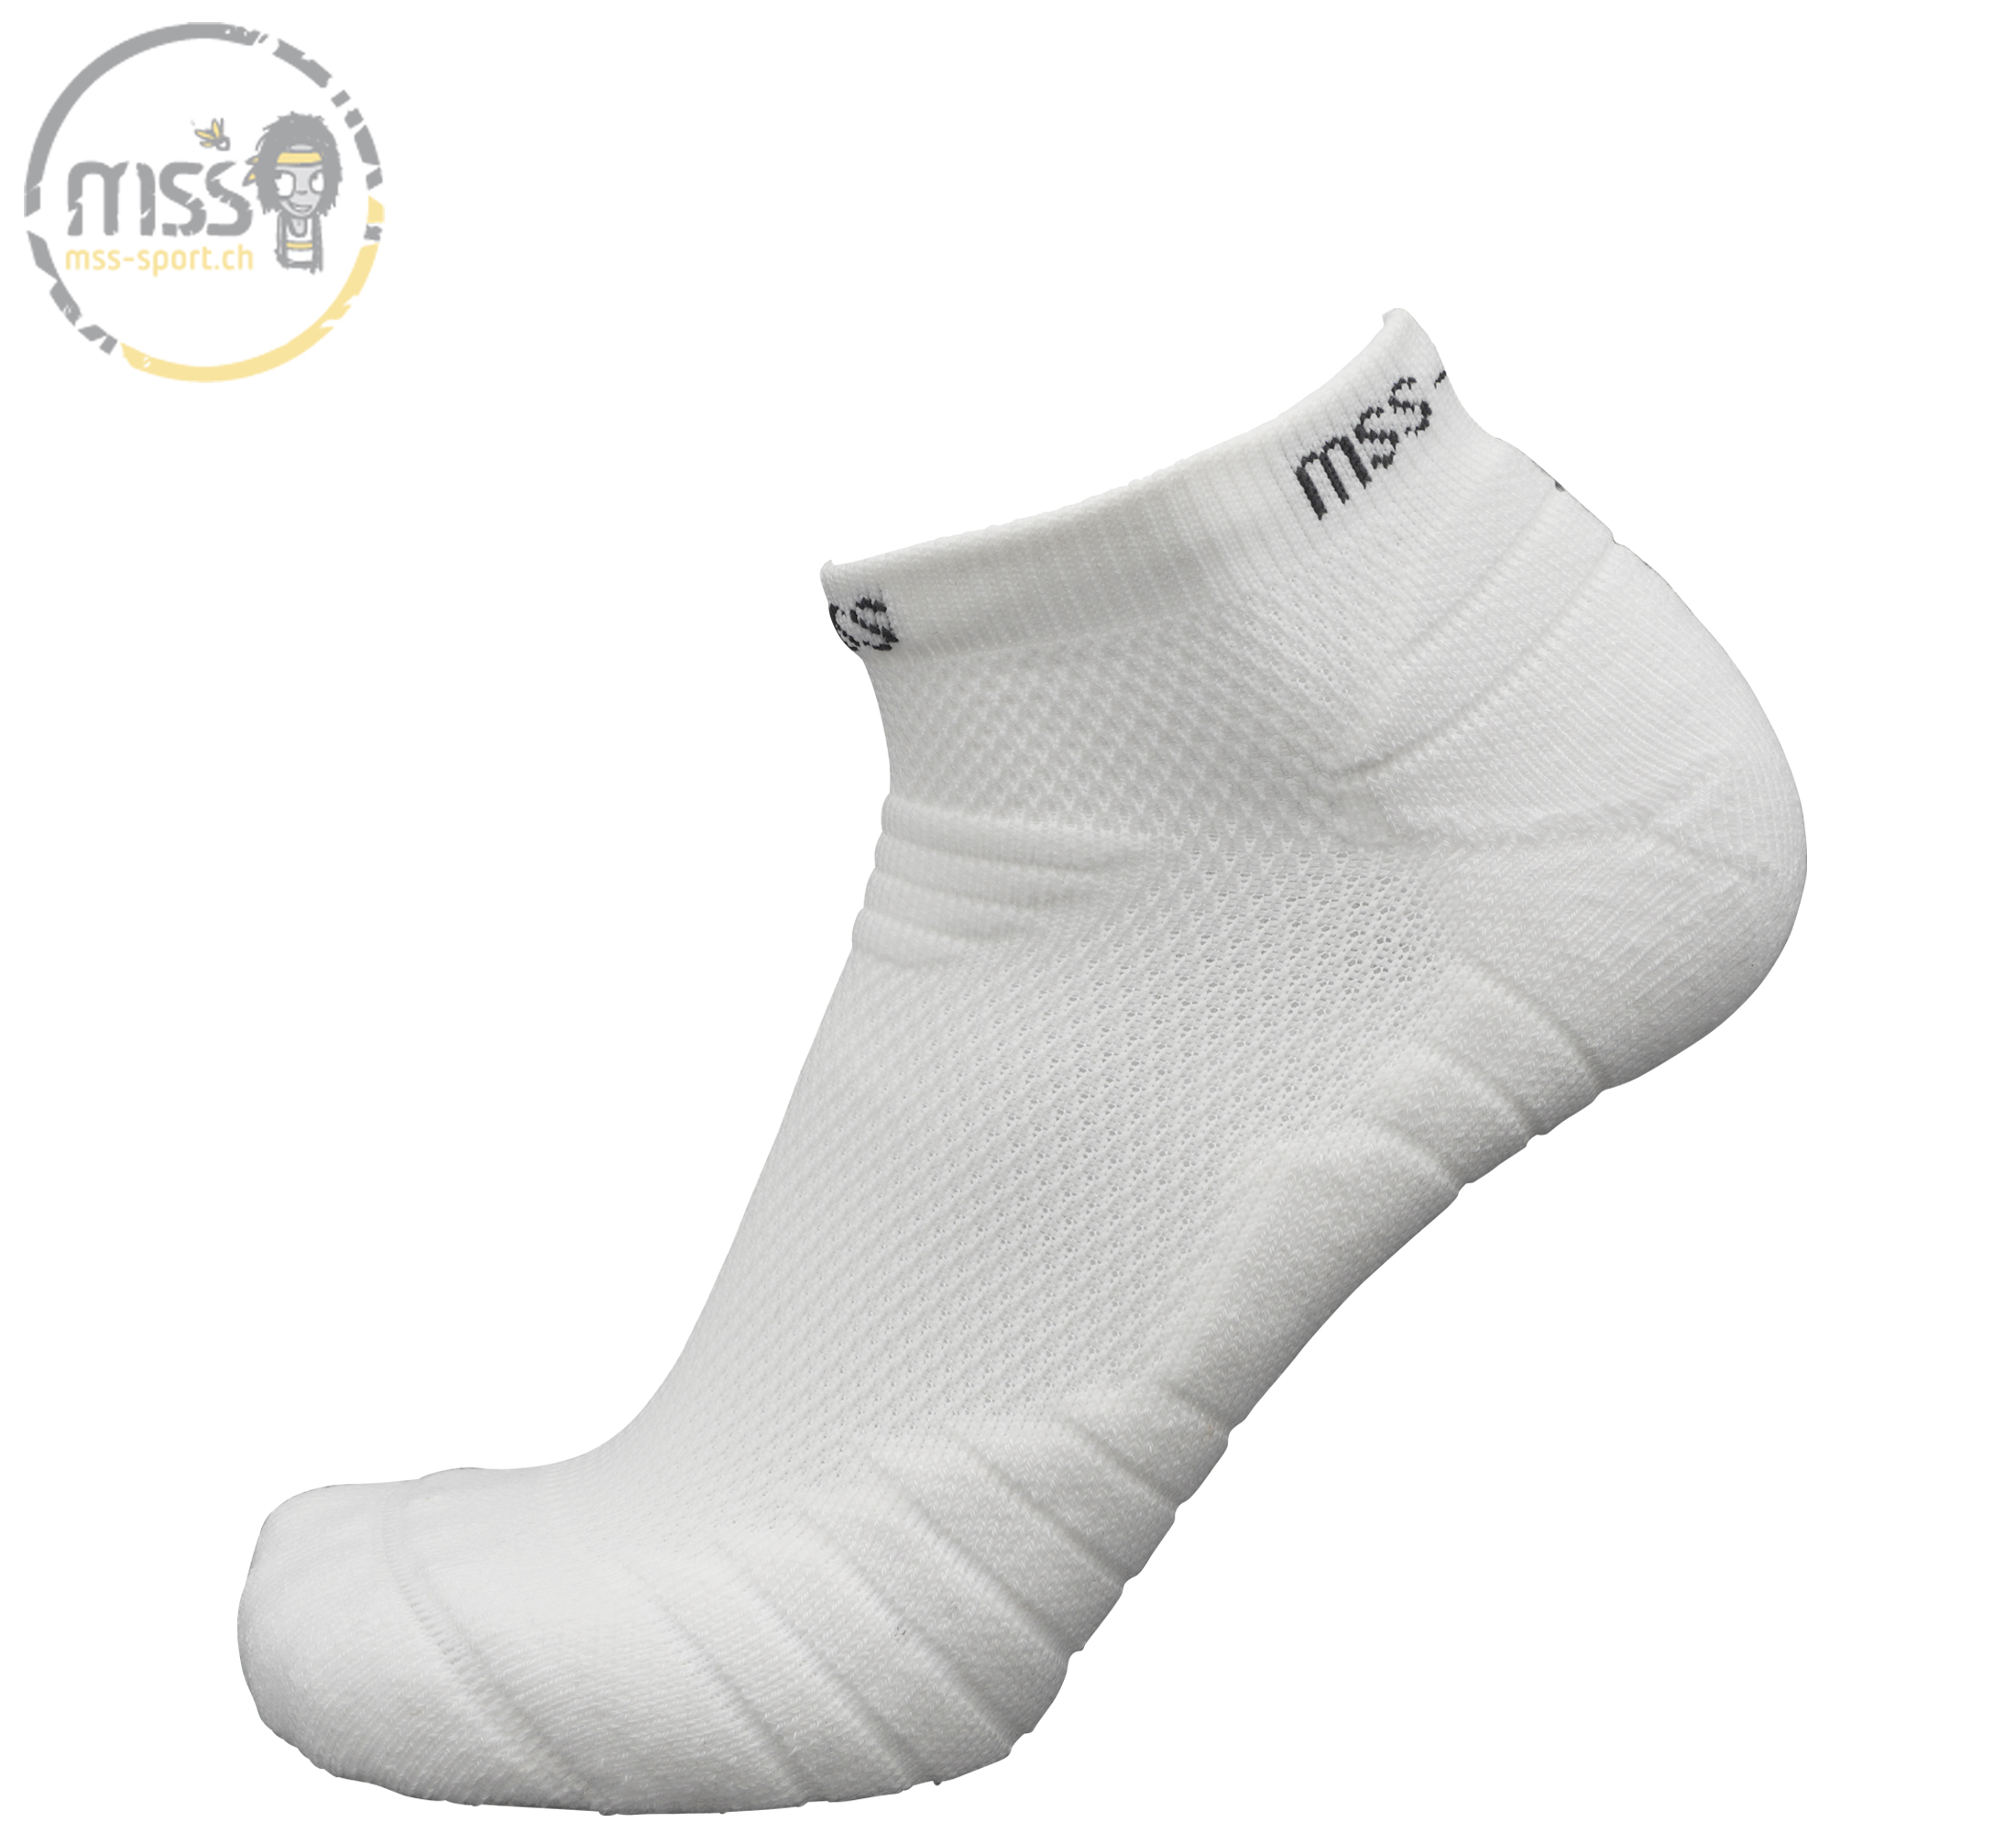 mss-socks Smash 5300 low Lady white